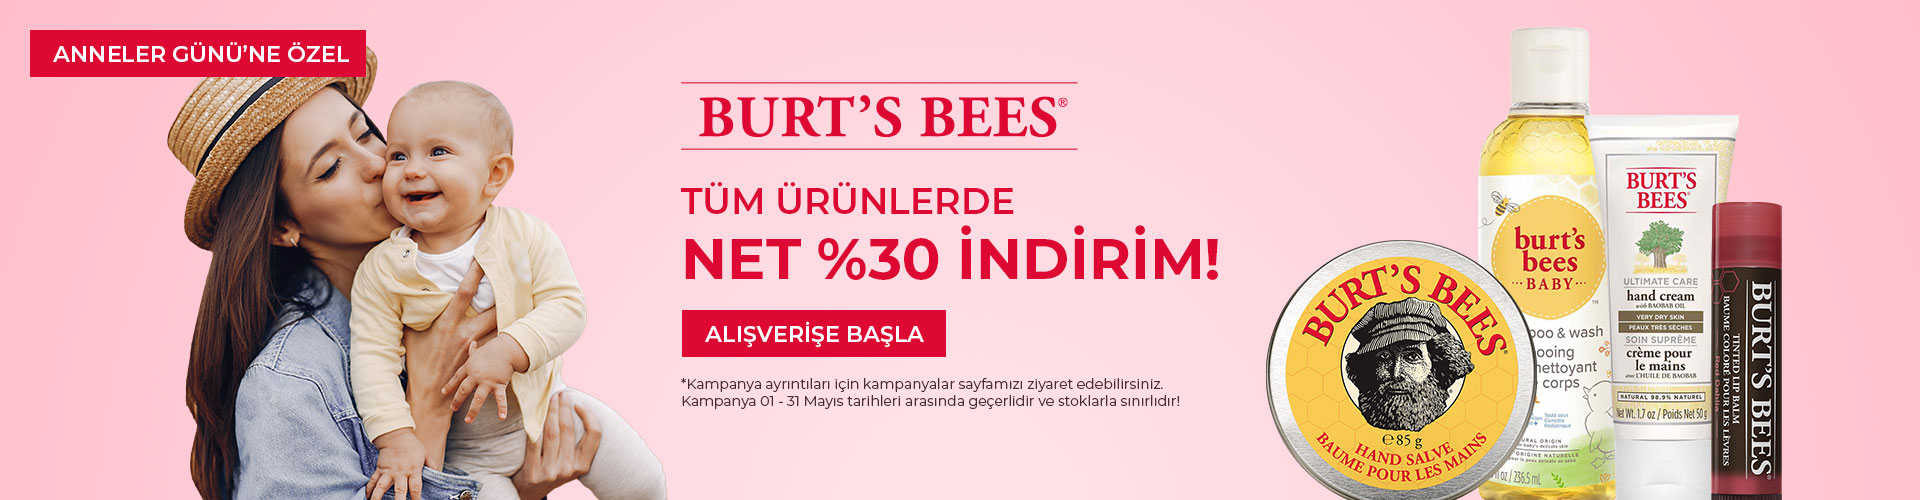 burts-bees-kampanya